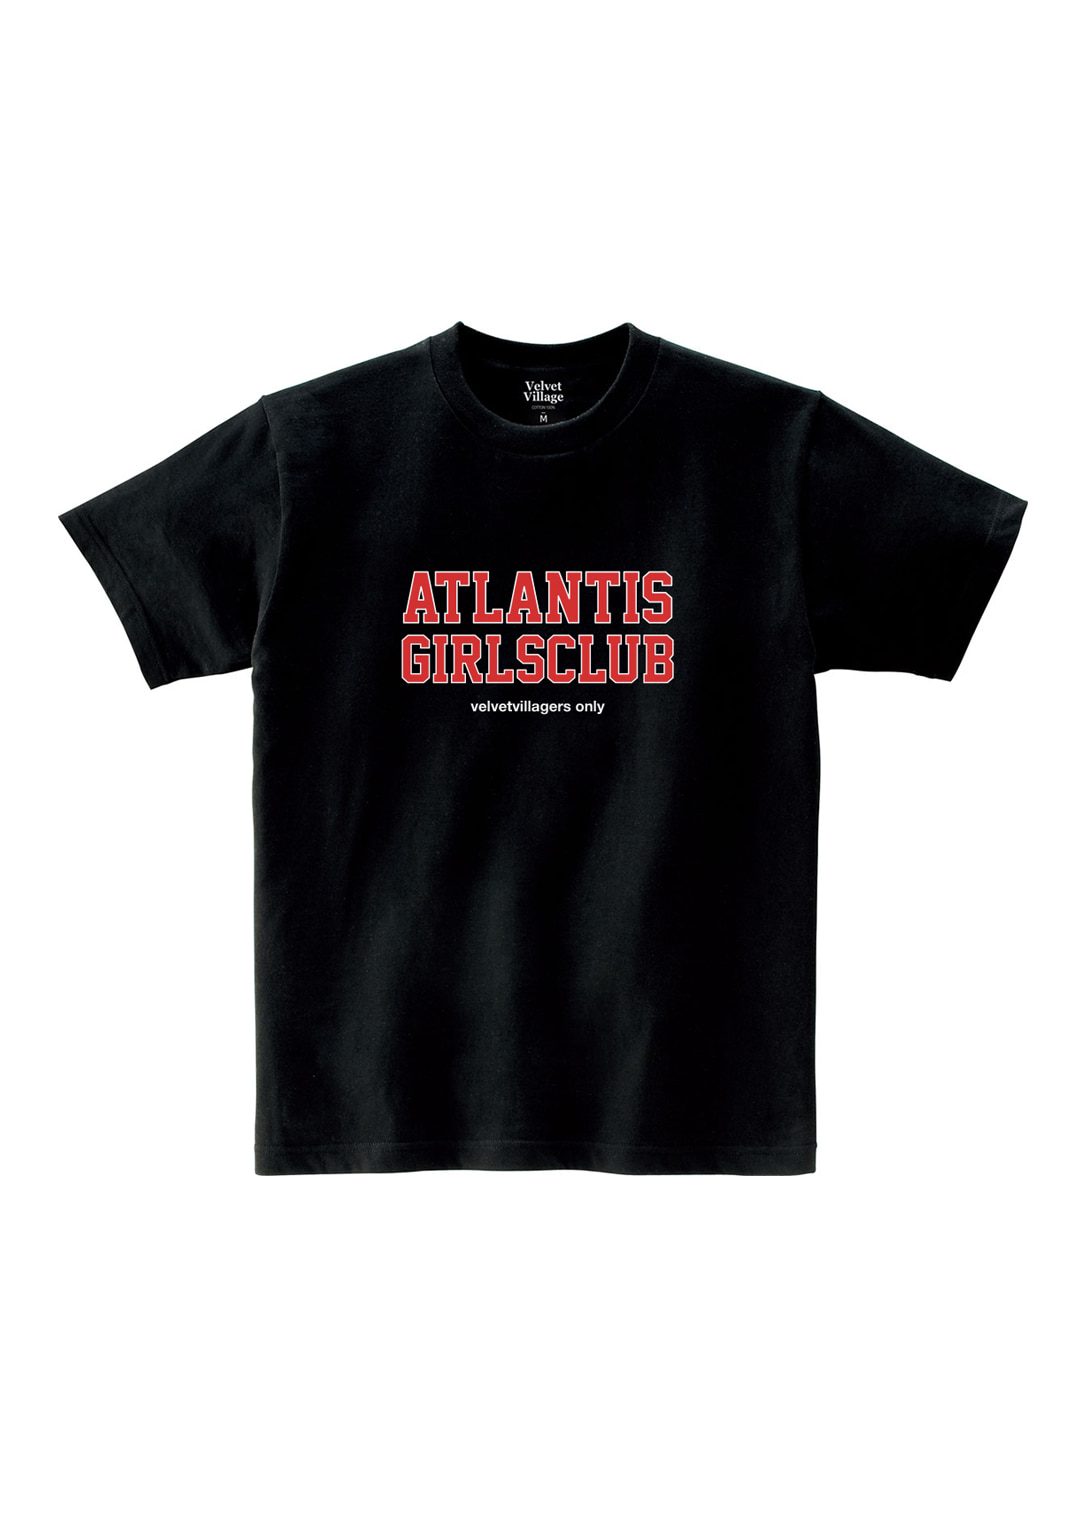 Atlantis girls club T-shirt (Black)